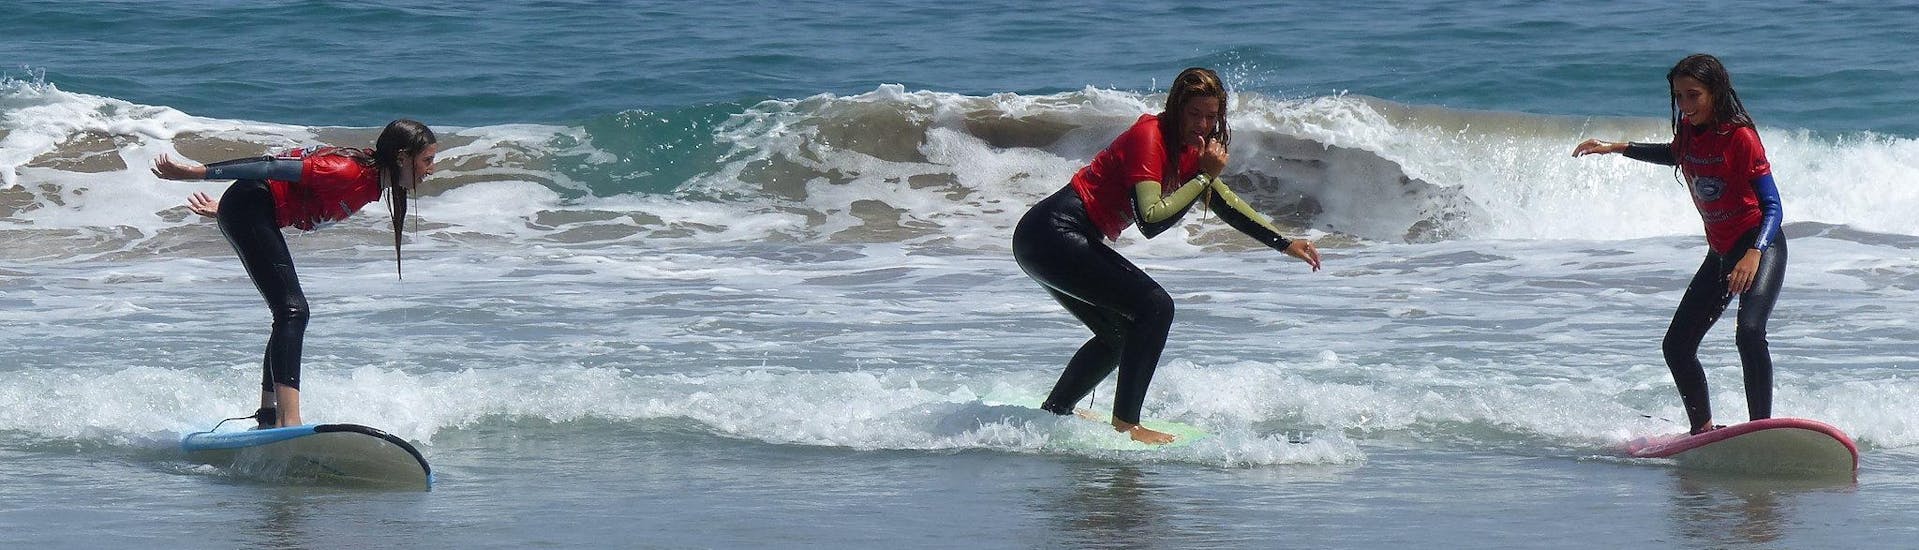 Halbtägiger Surfkurs für Kinder & Erwachsene - Alle Levels.